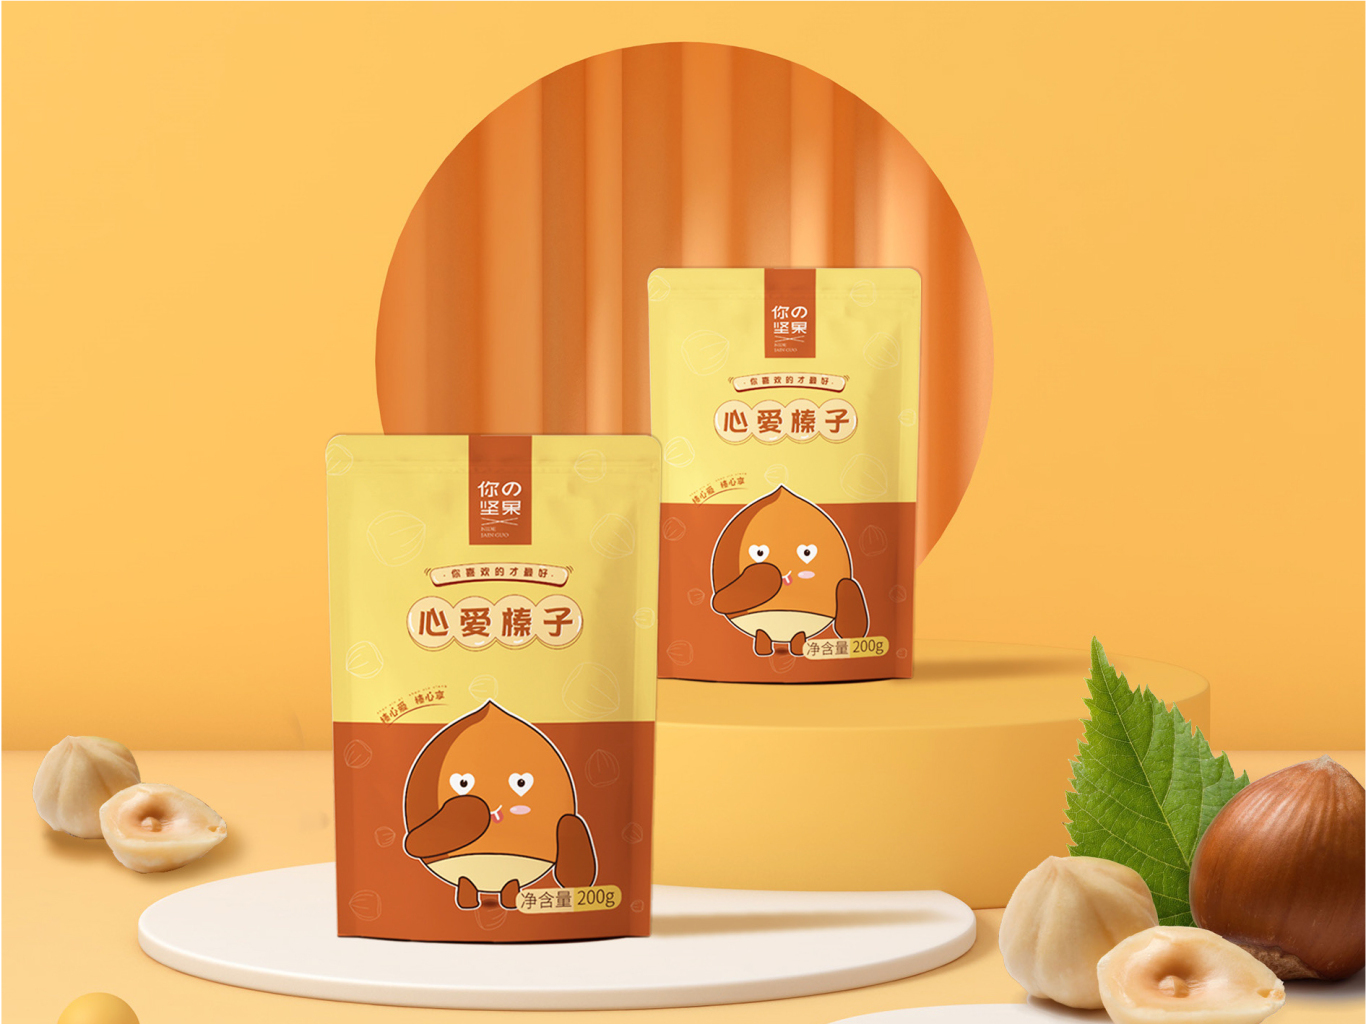 坚果包装设计-食品包装设计-零食包装设计-包装设计图14